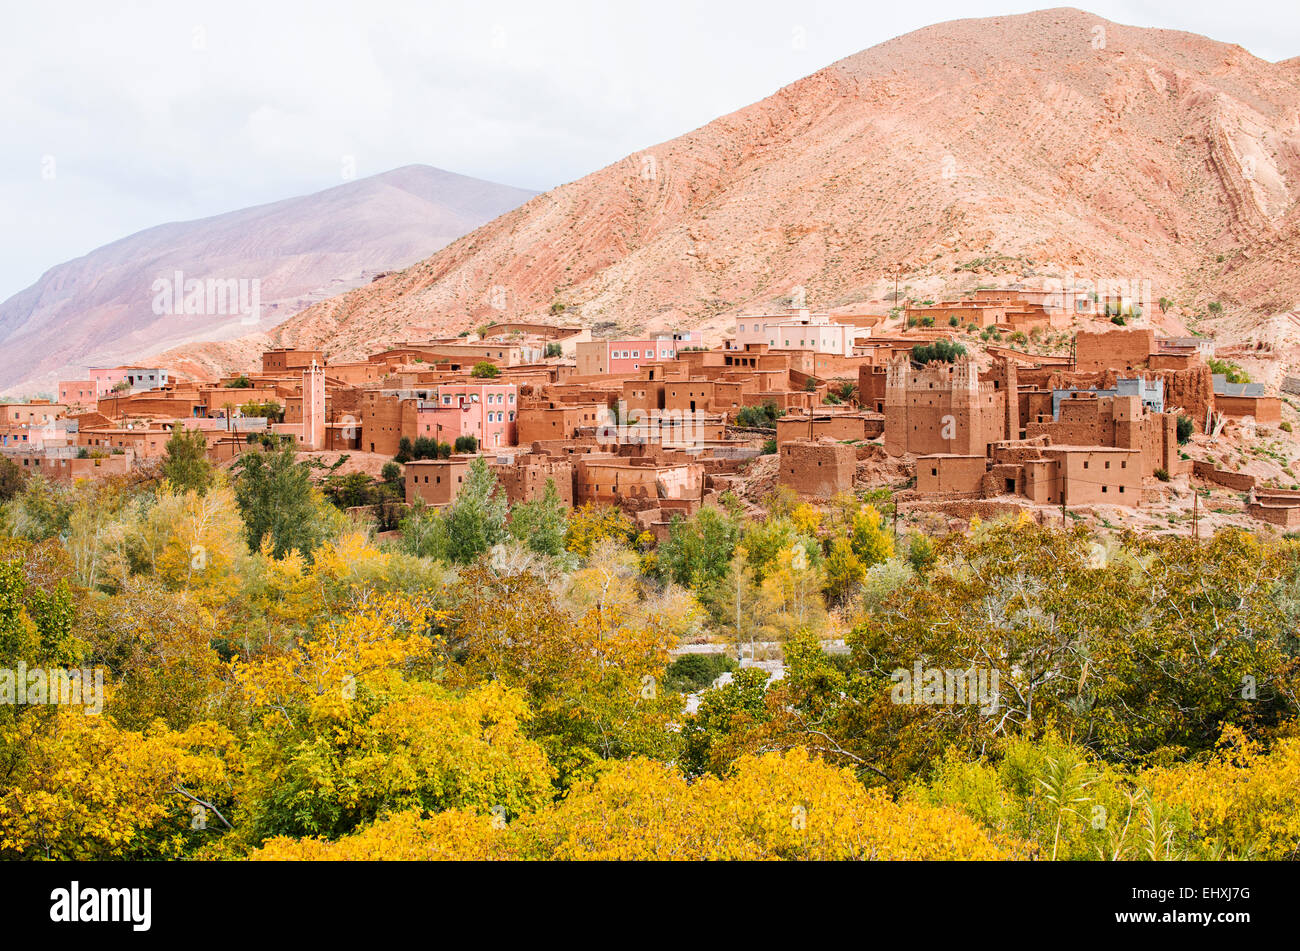 Ville berbère traditionnel sur la route des kasbahs, Province de Ouarzazate, Maroc Banque D'Images